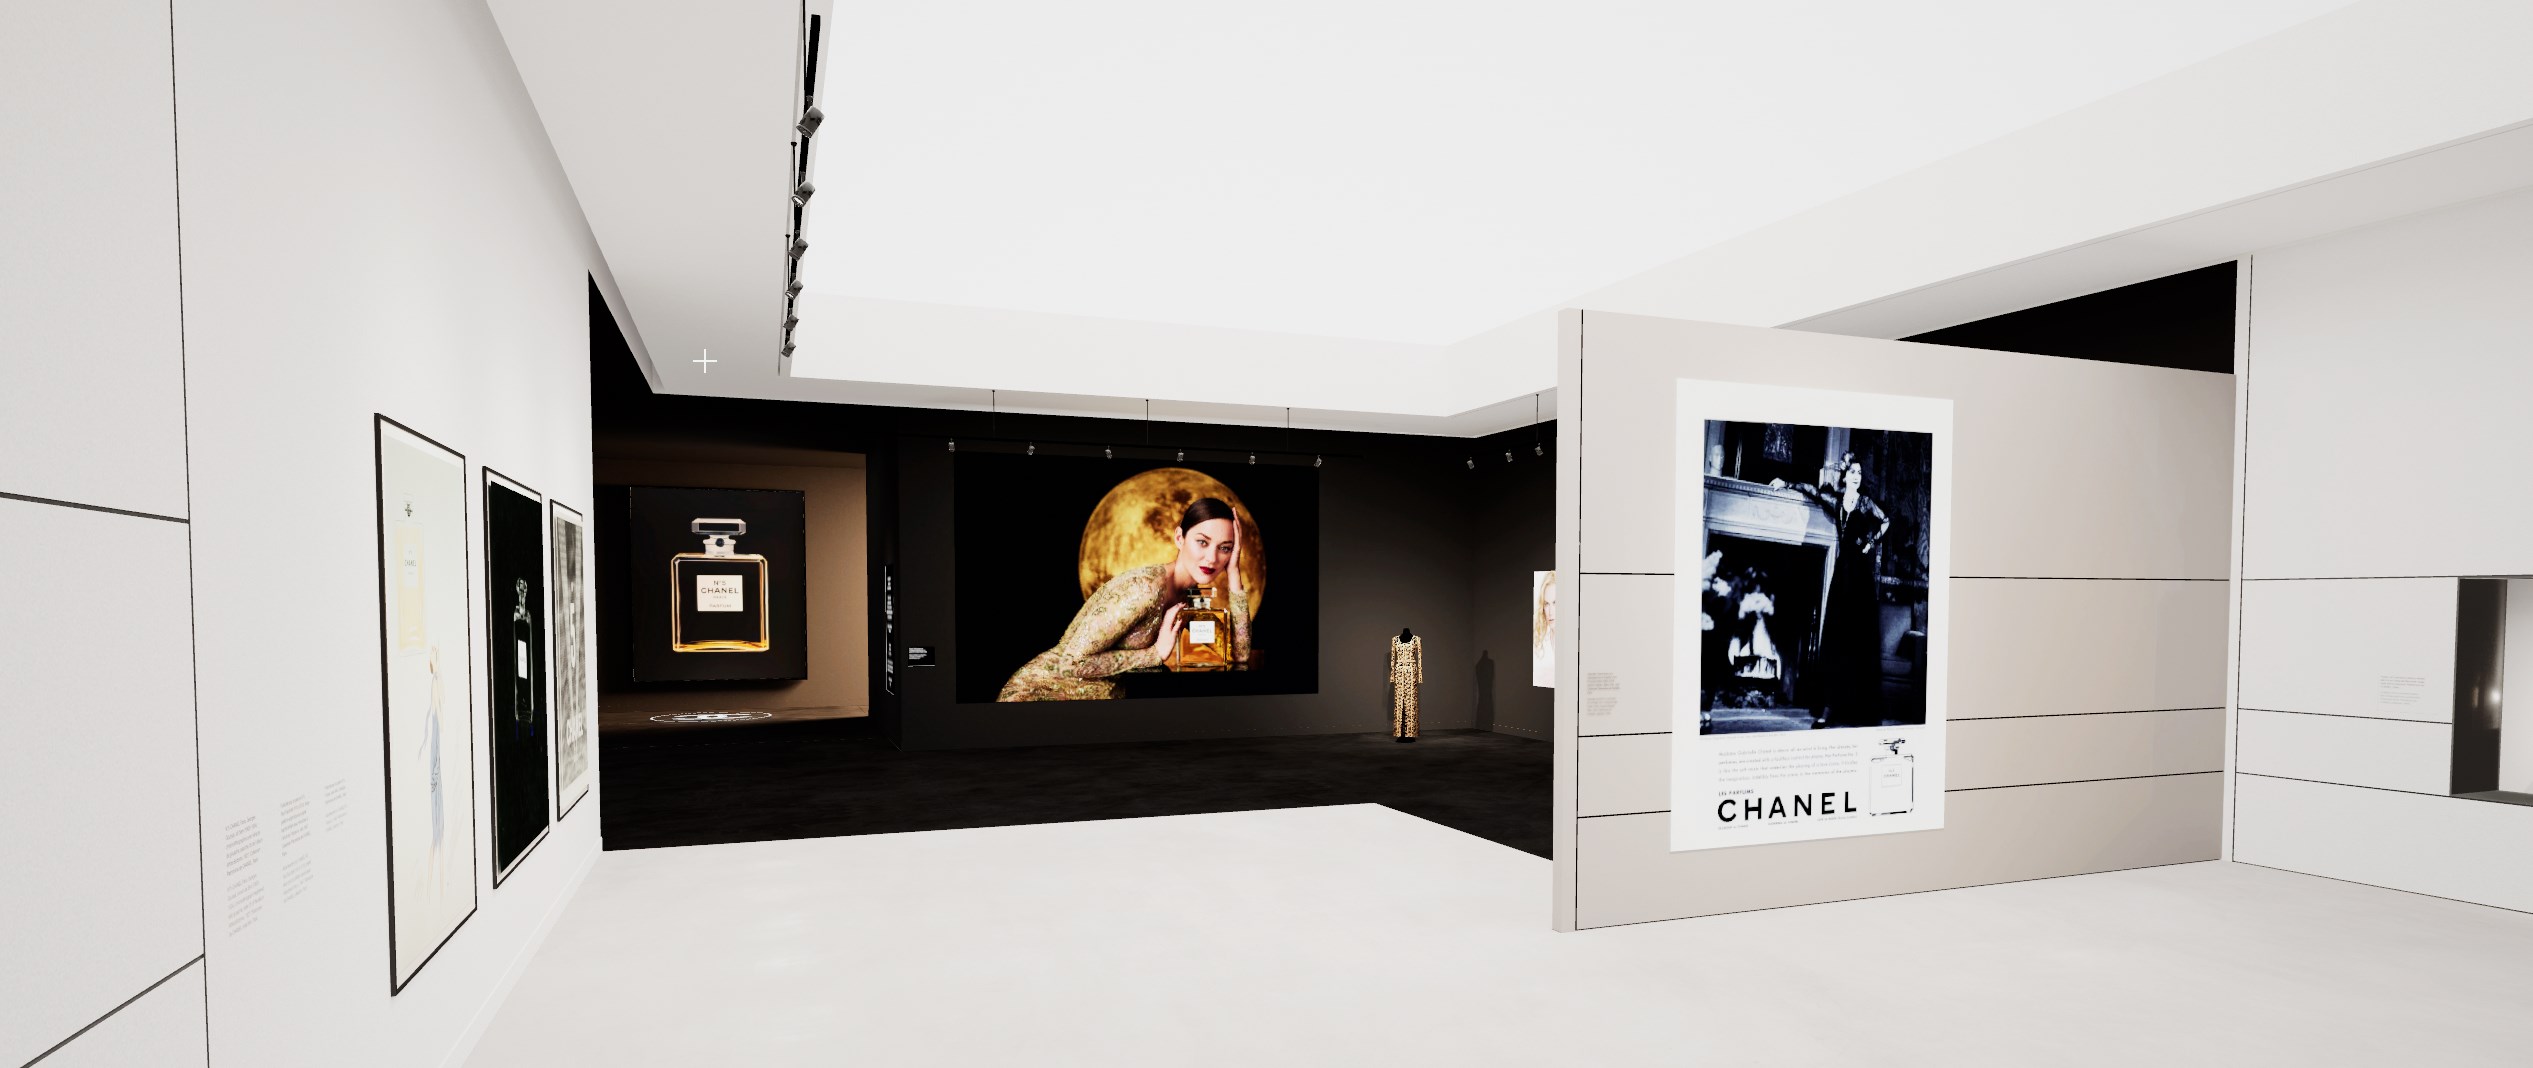 environnement 3D Chanel virtual production house xr